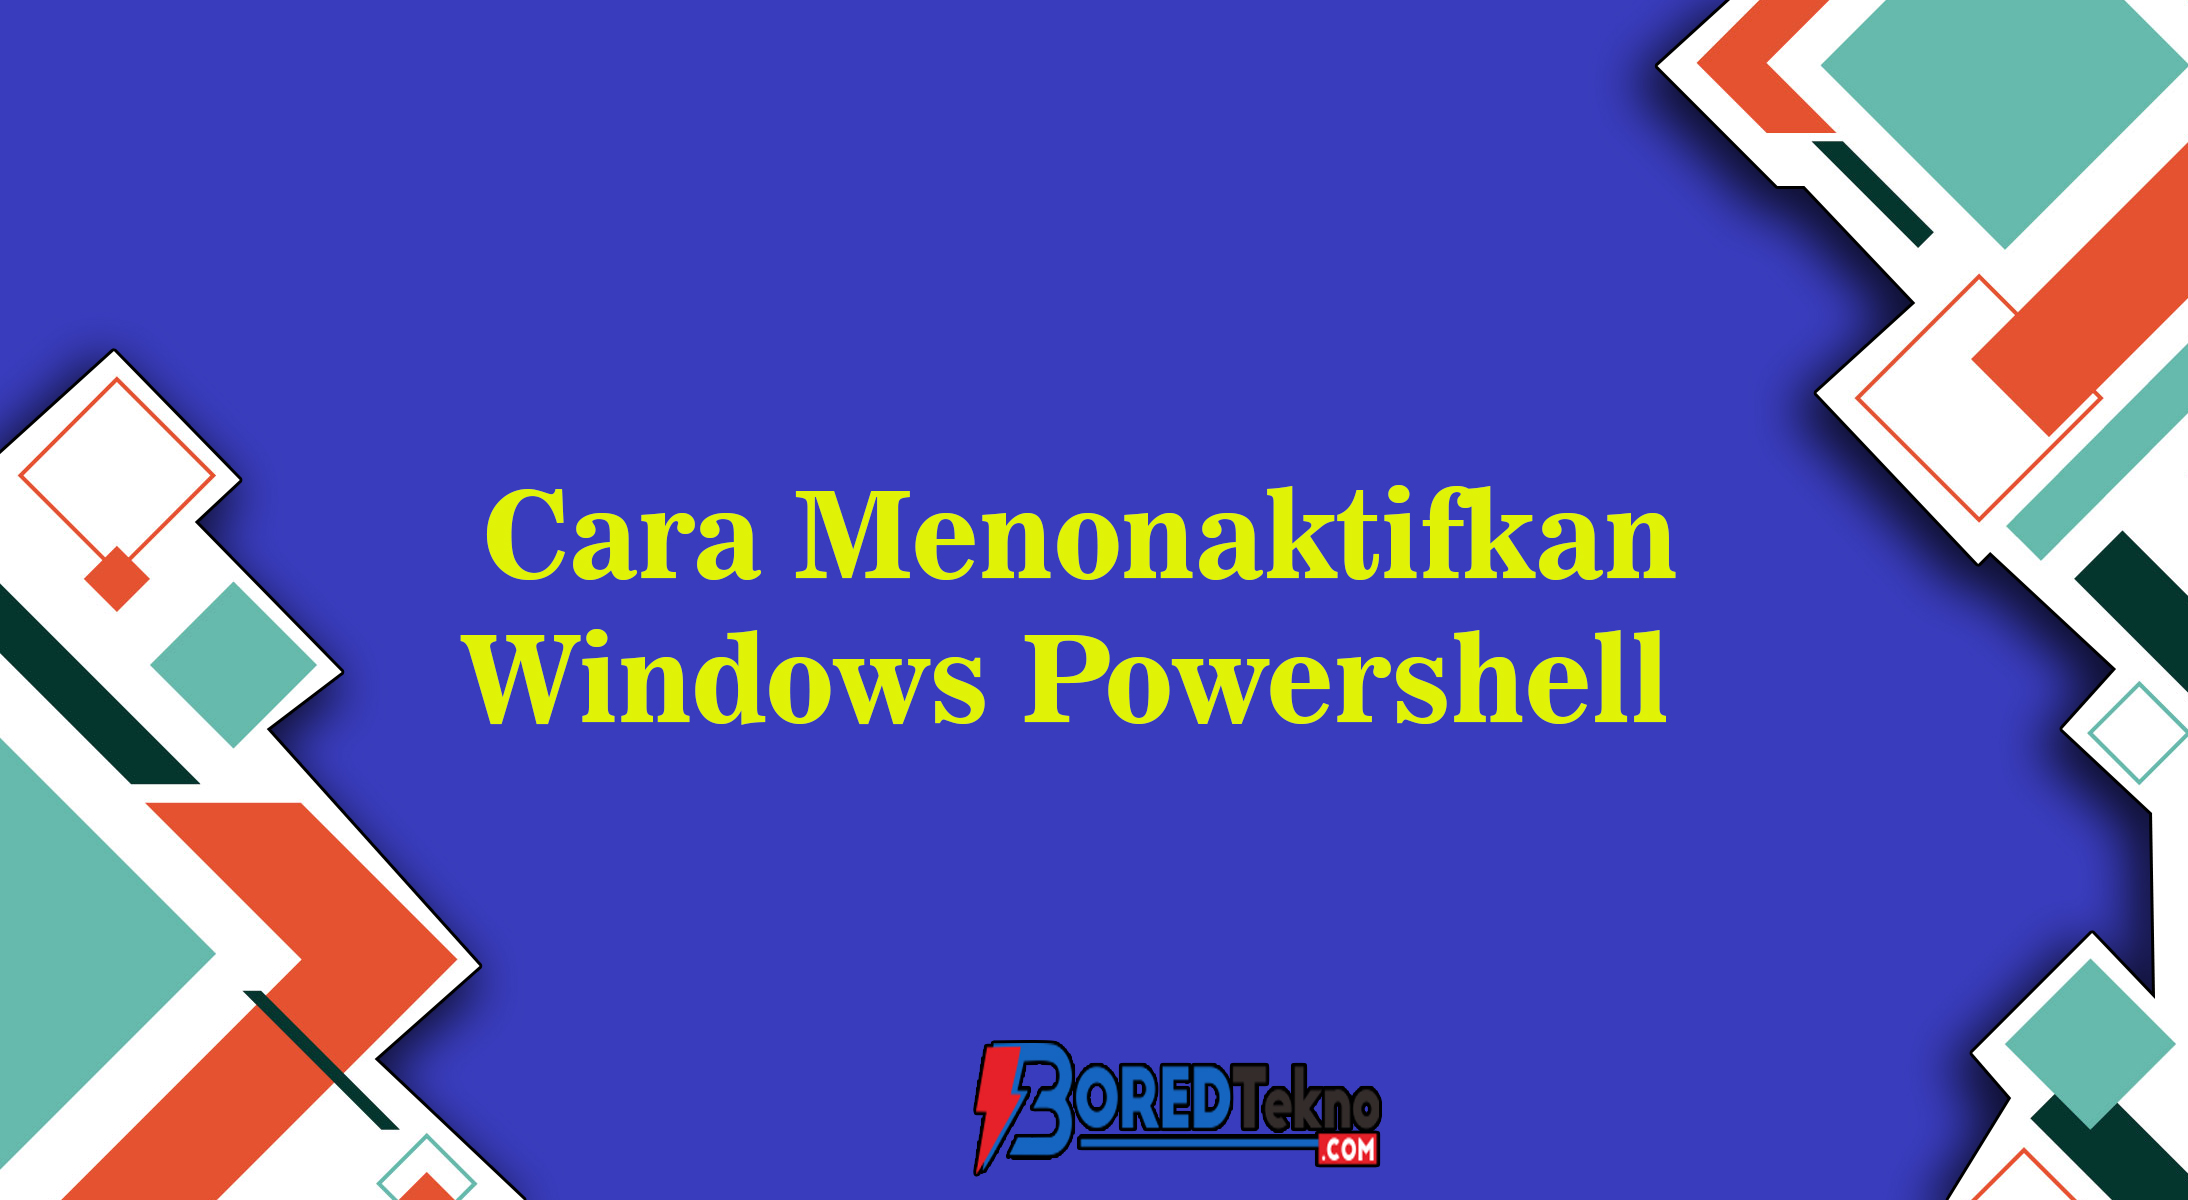 Cara Menonaktifkan Windows Powershell